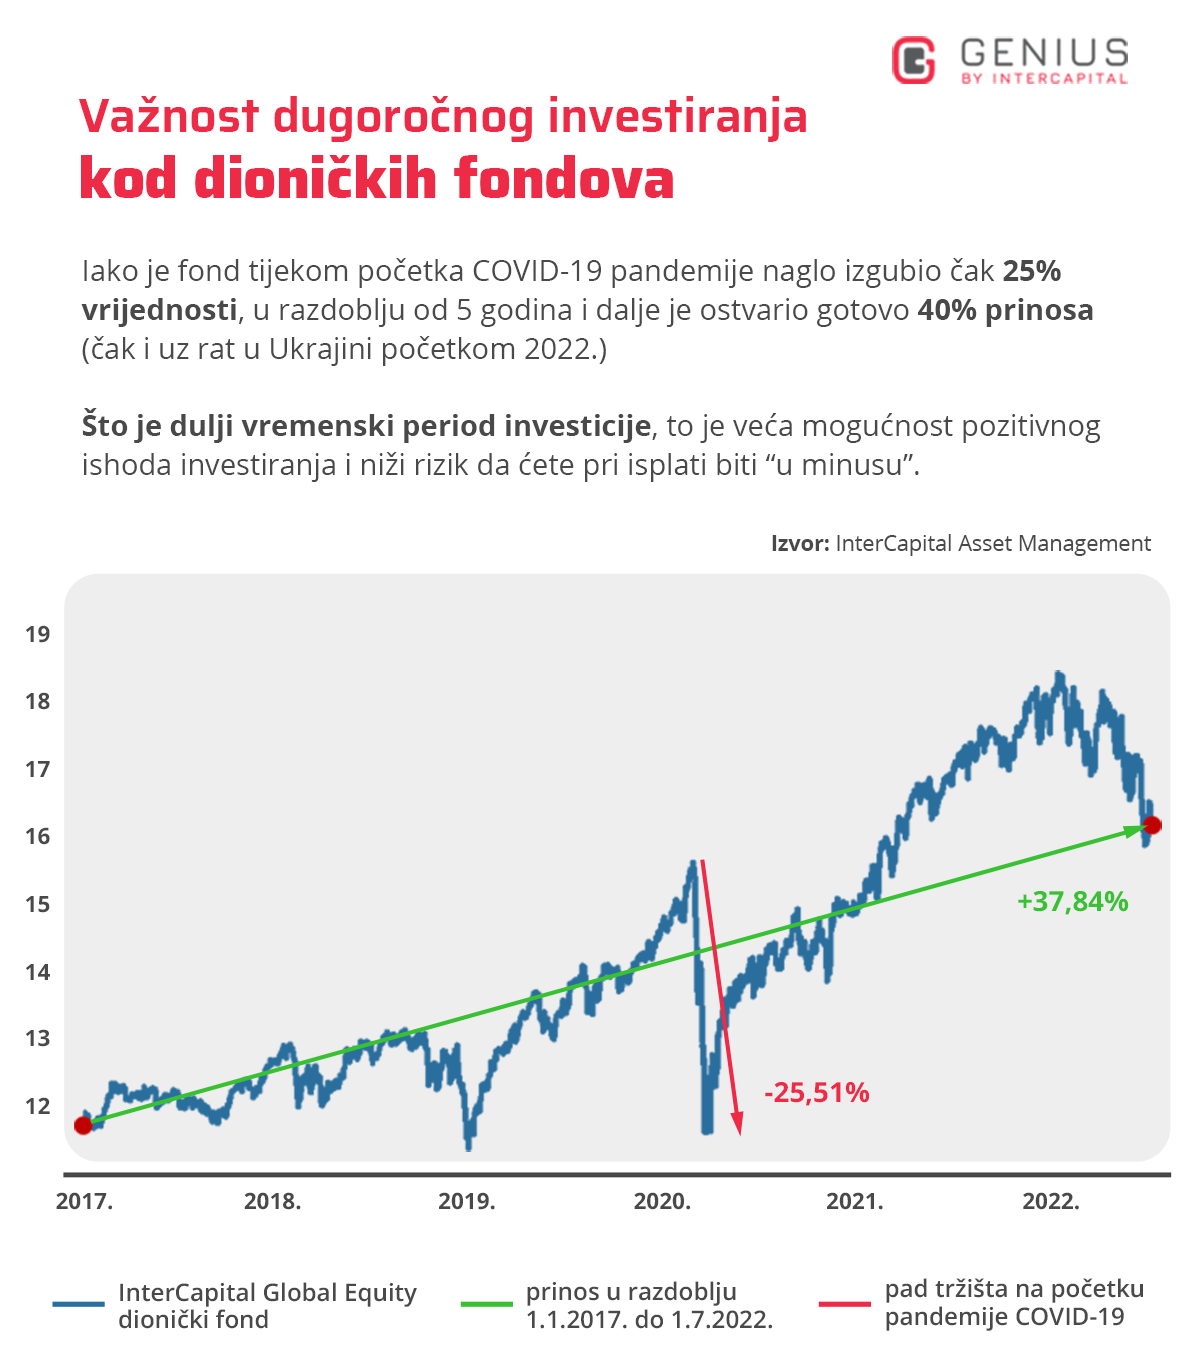 investicijski fondovi - graf s prikazom kretanja vrijednosti dioničkog fonda InterCapital Global Equity - gubitak tijekom početka pandemije koronavirusa od 25 posto i ukupan prinos tijekom 5 godina od gotovo 40 posto